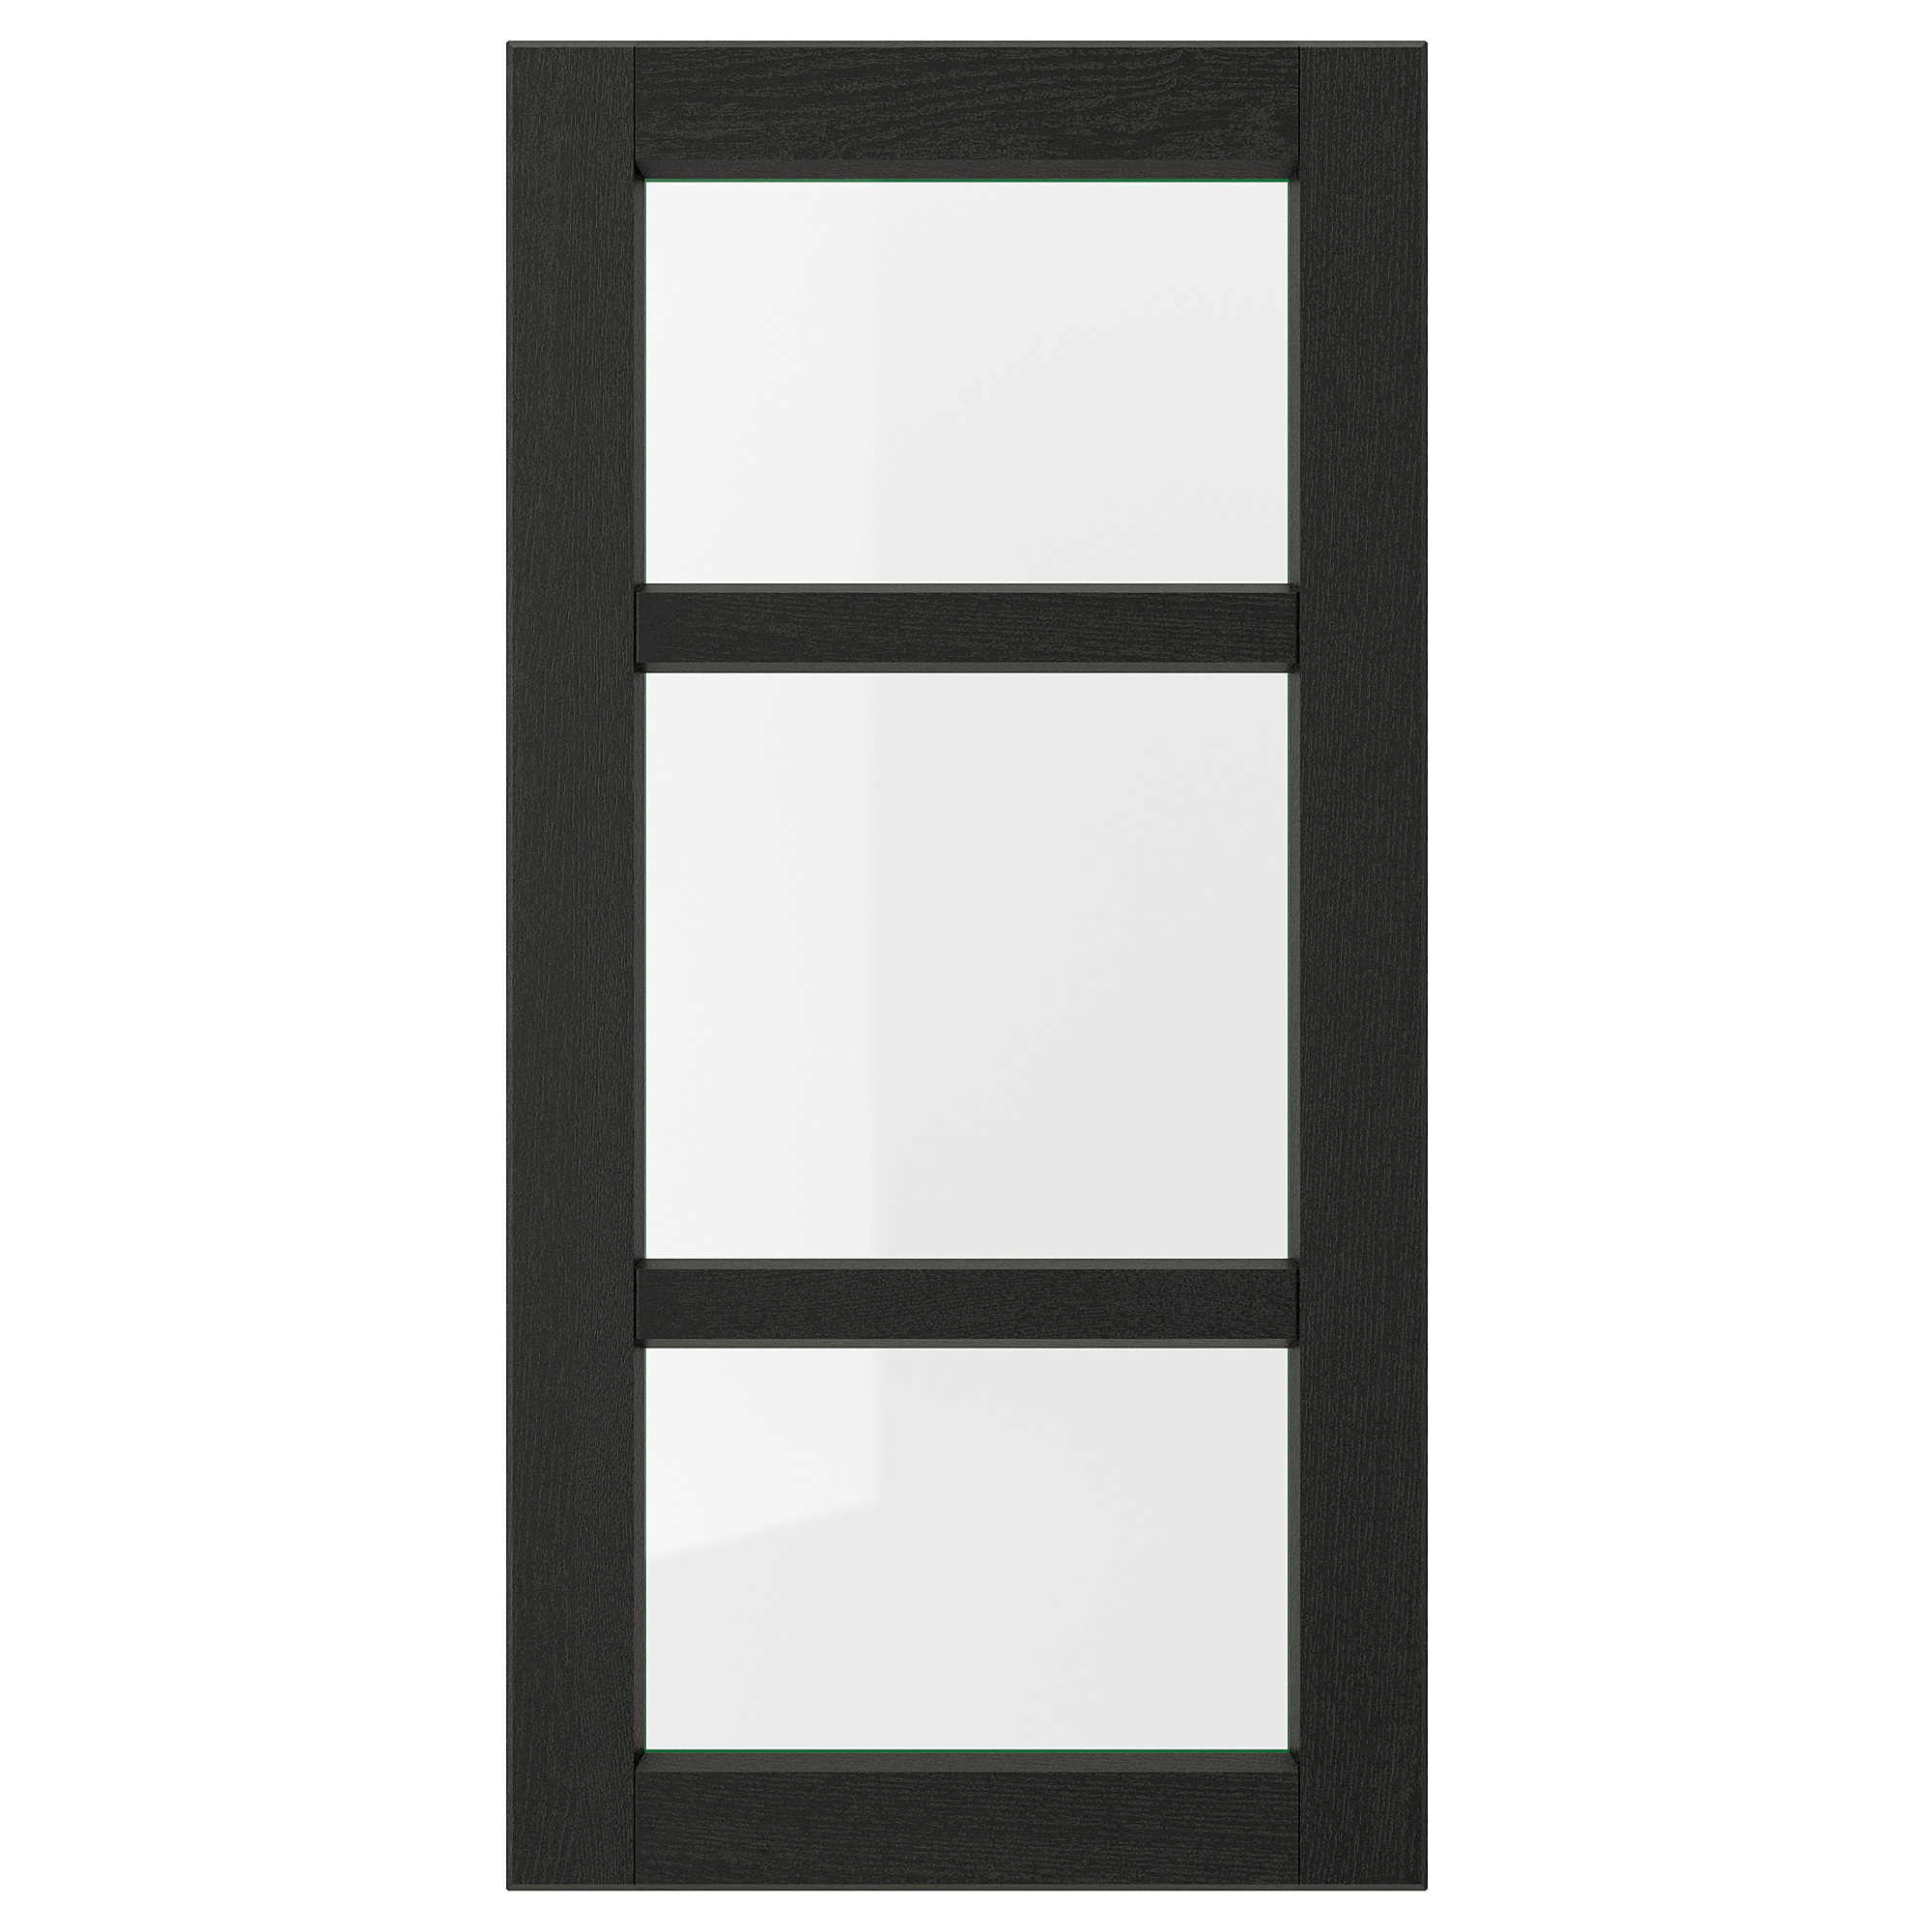 LERHYTTAN glass door